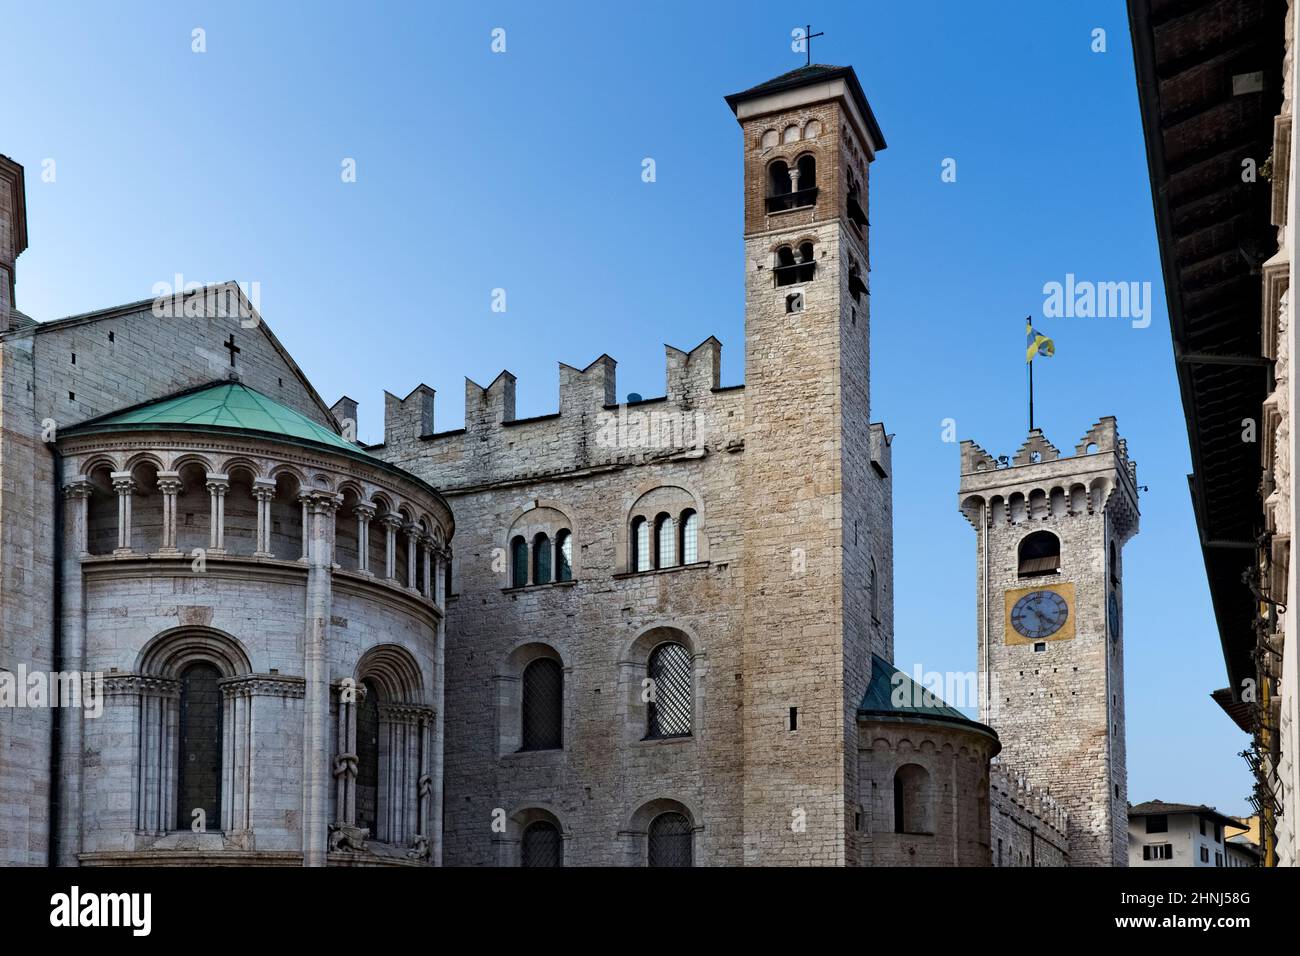 Le 'Castelletto dei Vescovi' (château des évêques) et la cathédrale de la ville de trente. Trentin-Haut-Adige, Italie, Europe. Banque D'Images